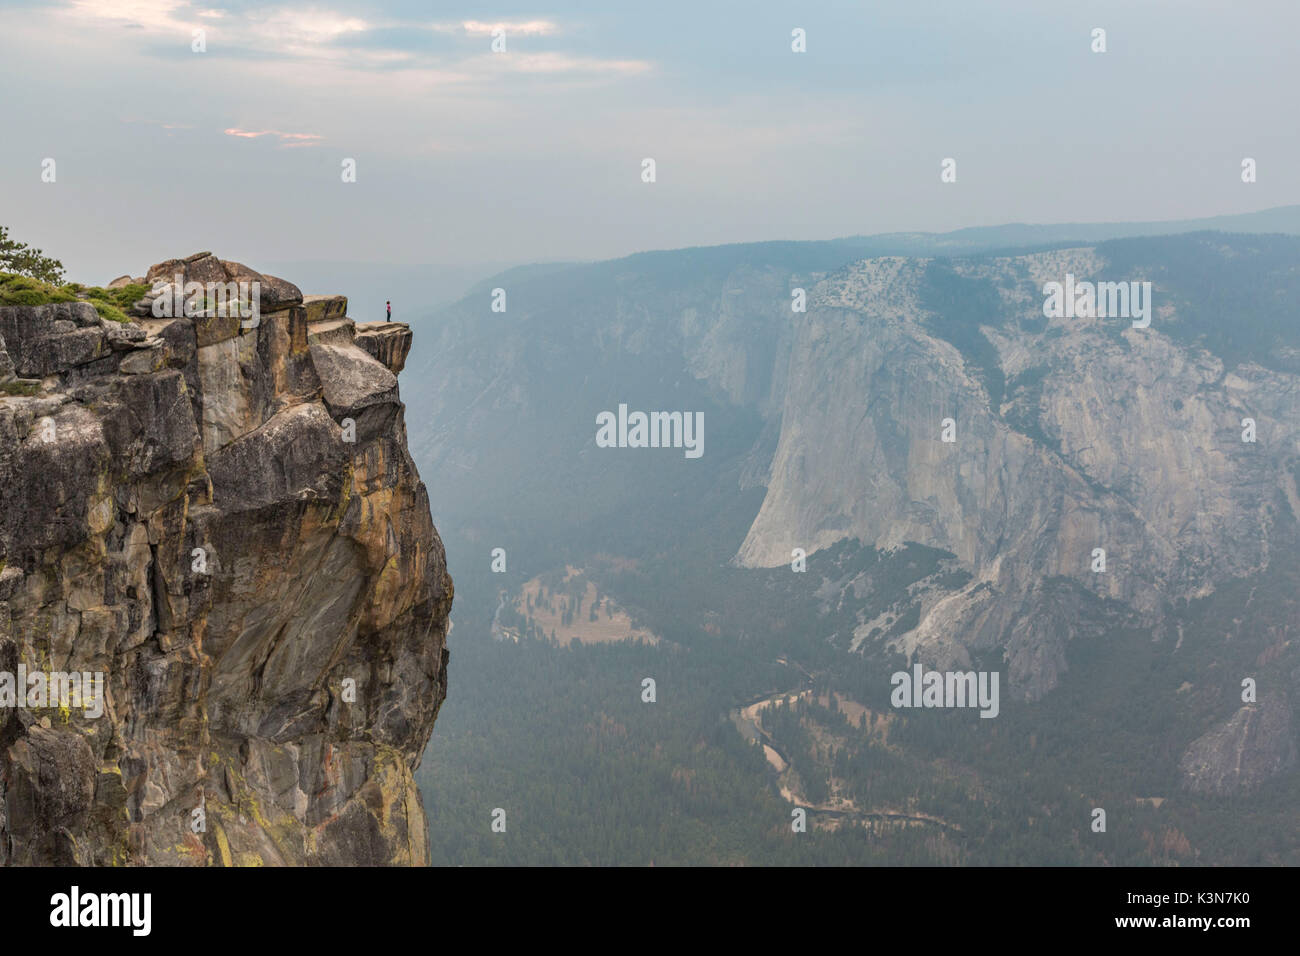 Personne sur le bord au point de vue de Taft, vallée de Yosemite. Yosemite National Park, Mariposa County, Californie, USA. Banque D'Images